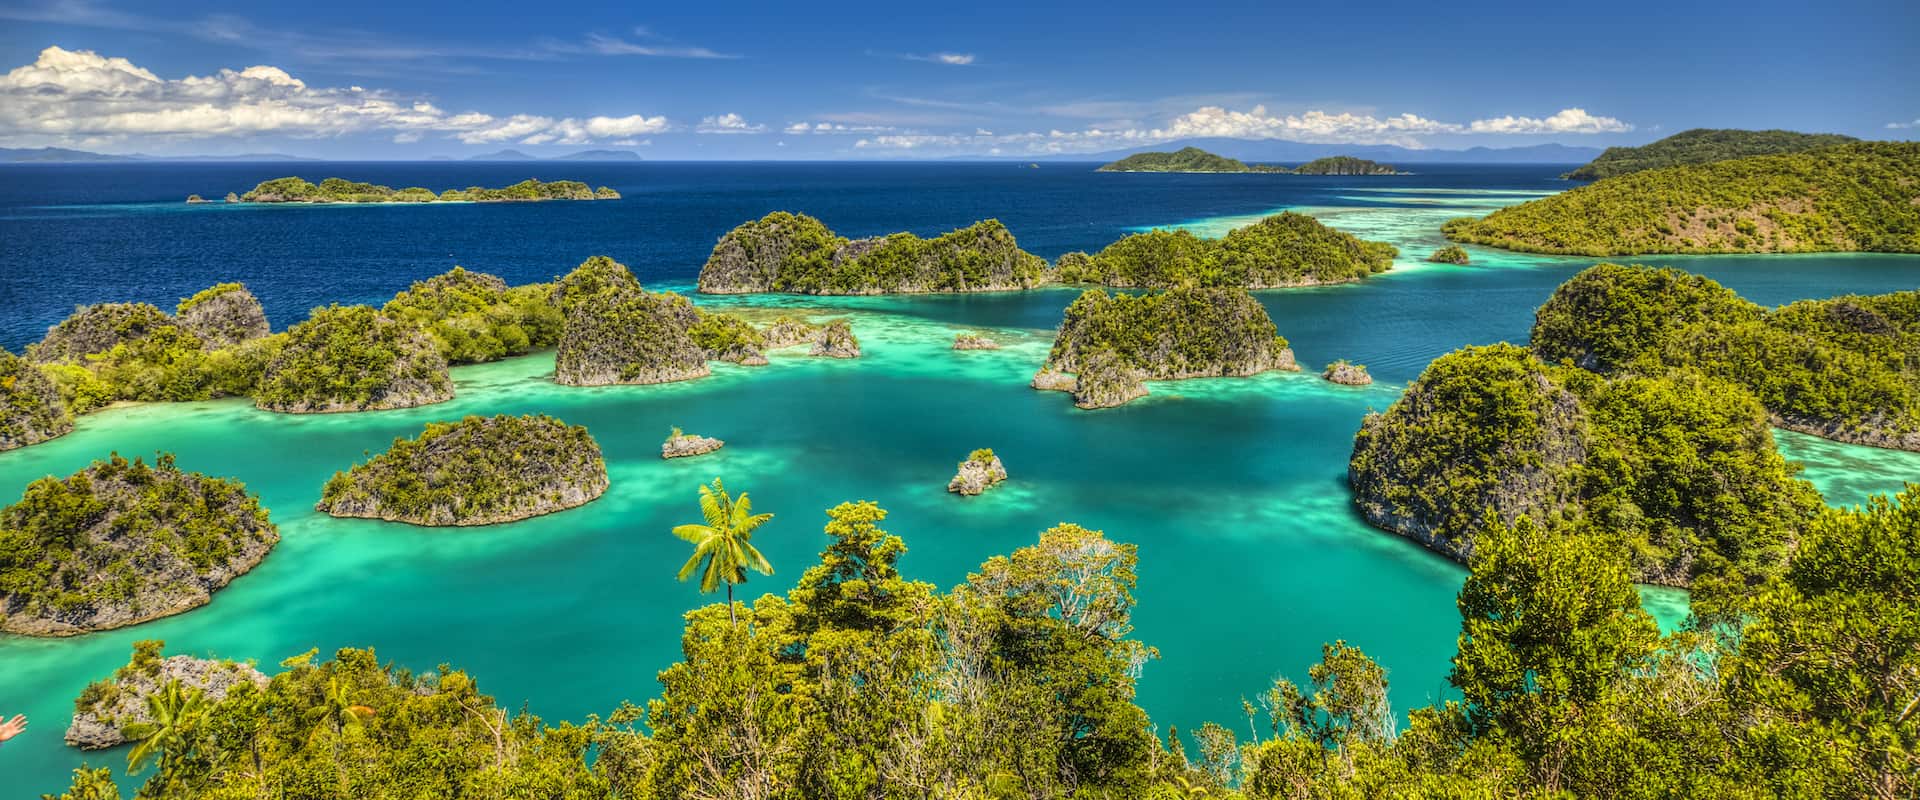 Kunjungi 5 Tempat Wisata Alam Terbaik Di Asia Yang Wajib Kamu Kunjungi Sekali Seumur Hidup